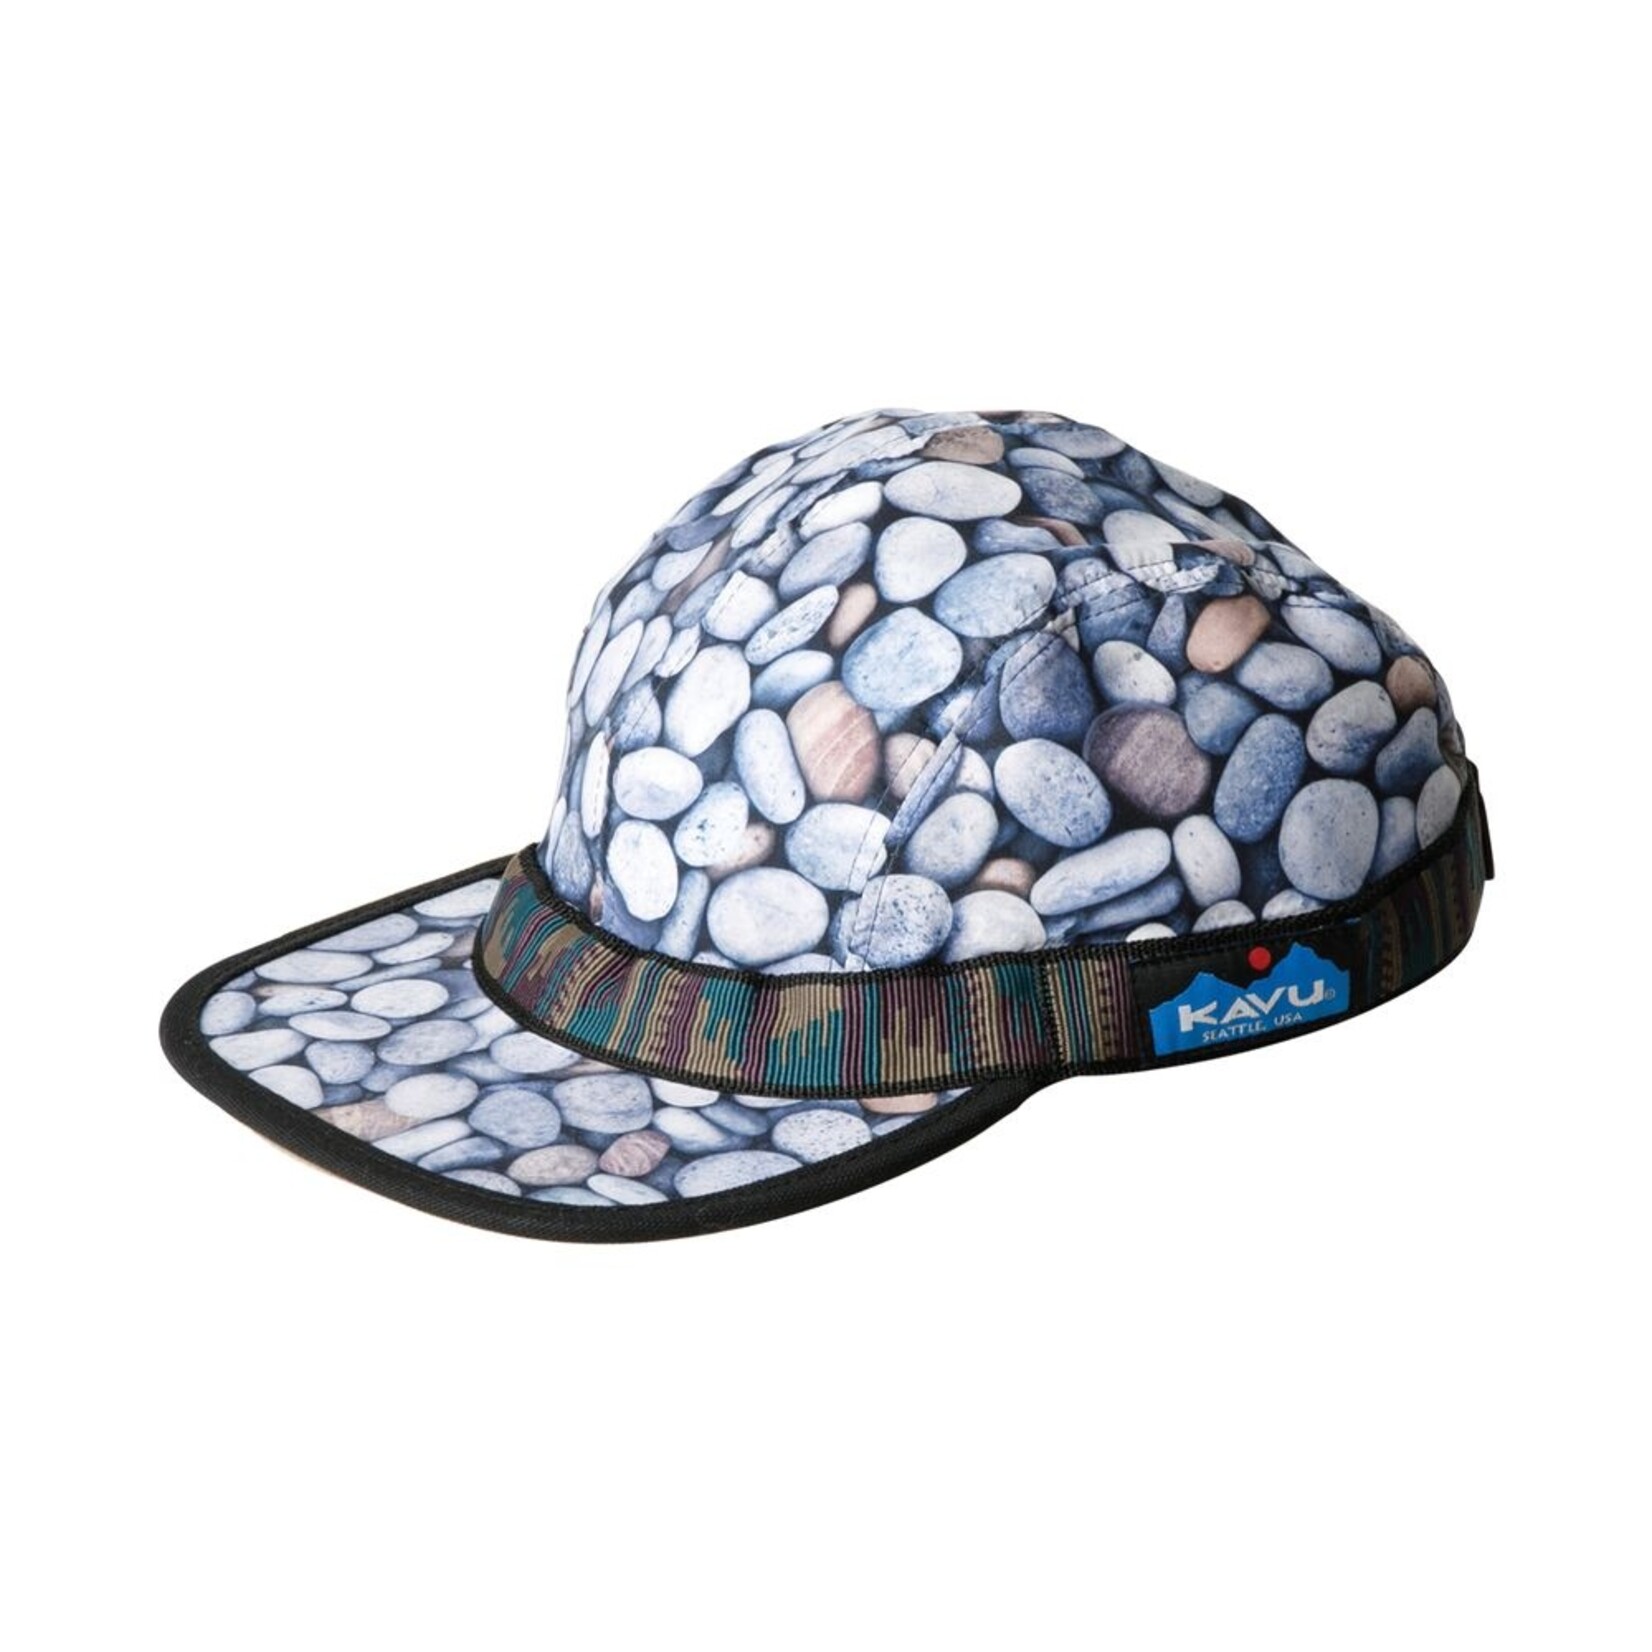 Kavu Synthetic Strapcap Hat